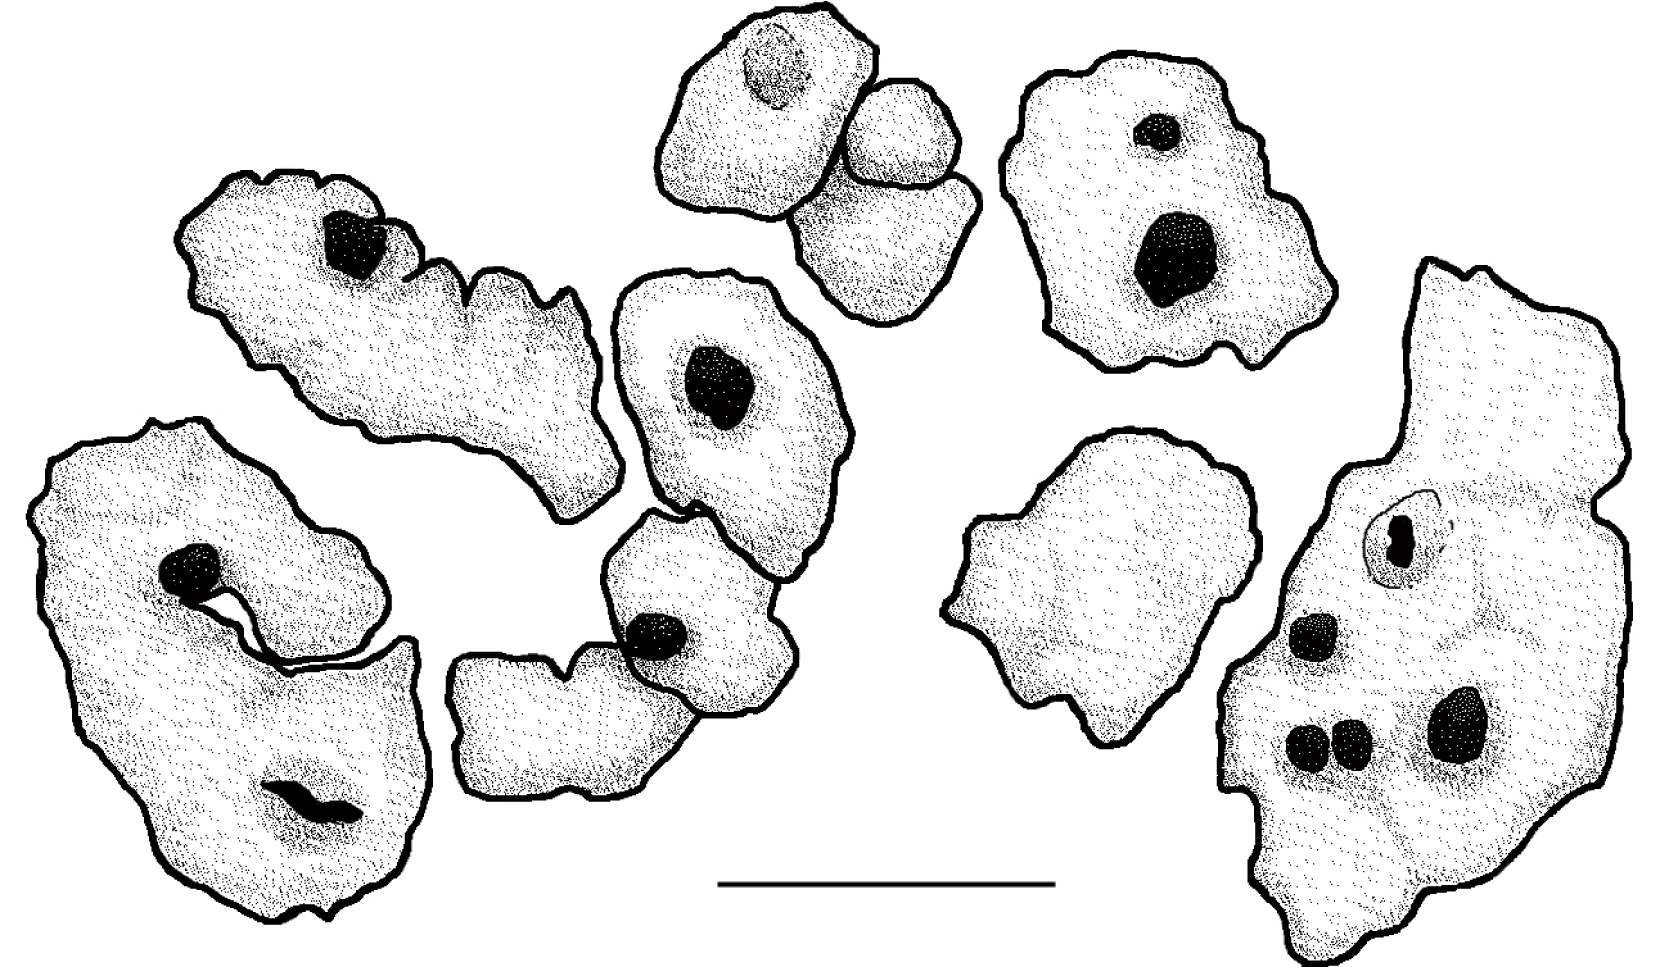 Fig. 1. Squamulose epilithic lichen infected by lichenicolous fungus Pyrenidium actinellum s.l. Bar – 400 µm.